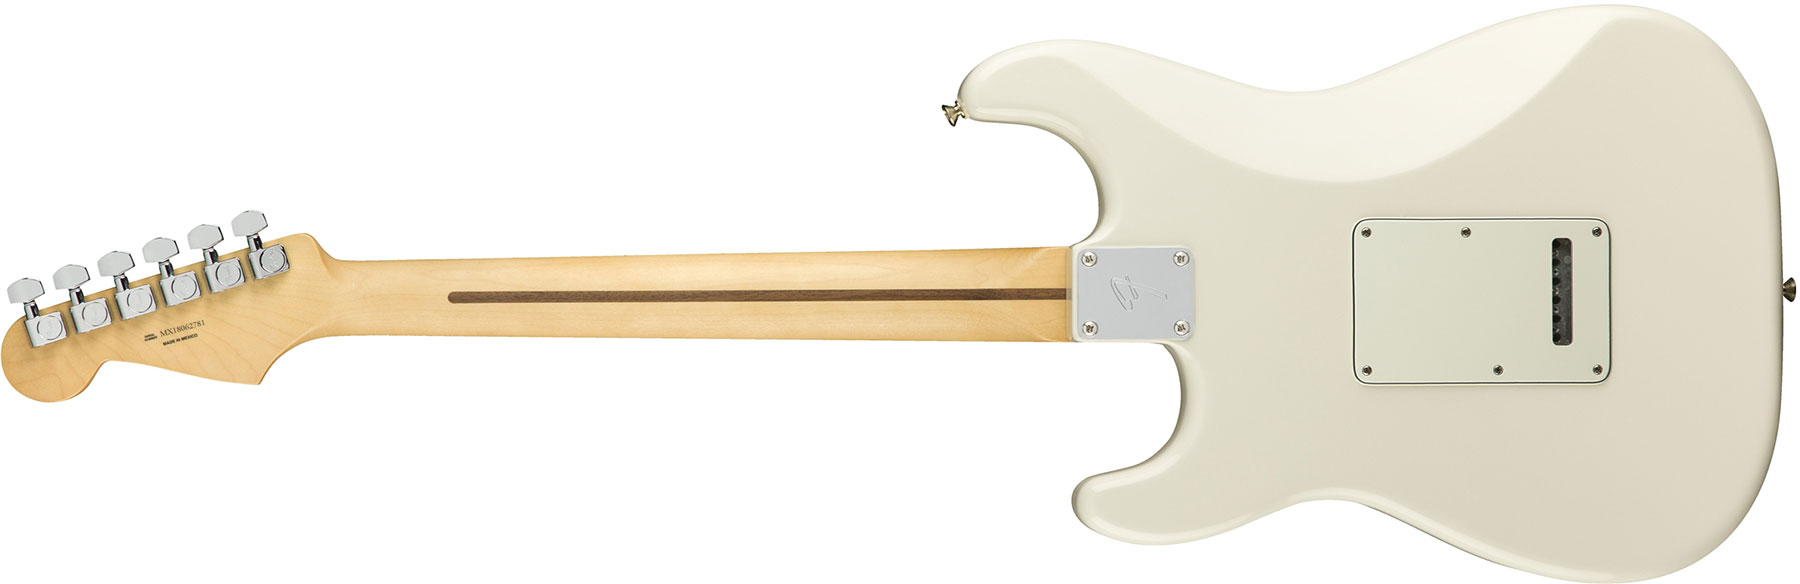 Fender Strat Player Mex Sss Mn - Polar White - Elektrische gitaar in Str-vorm - Variation 1